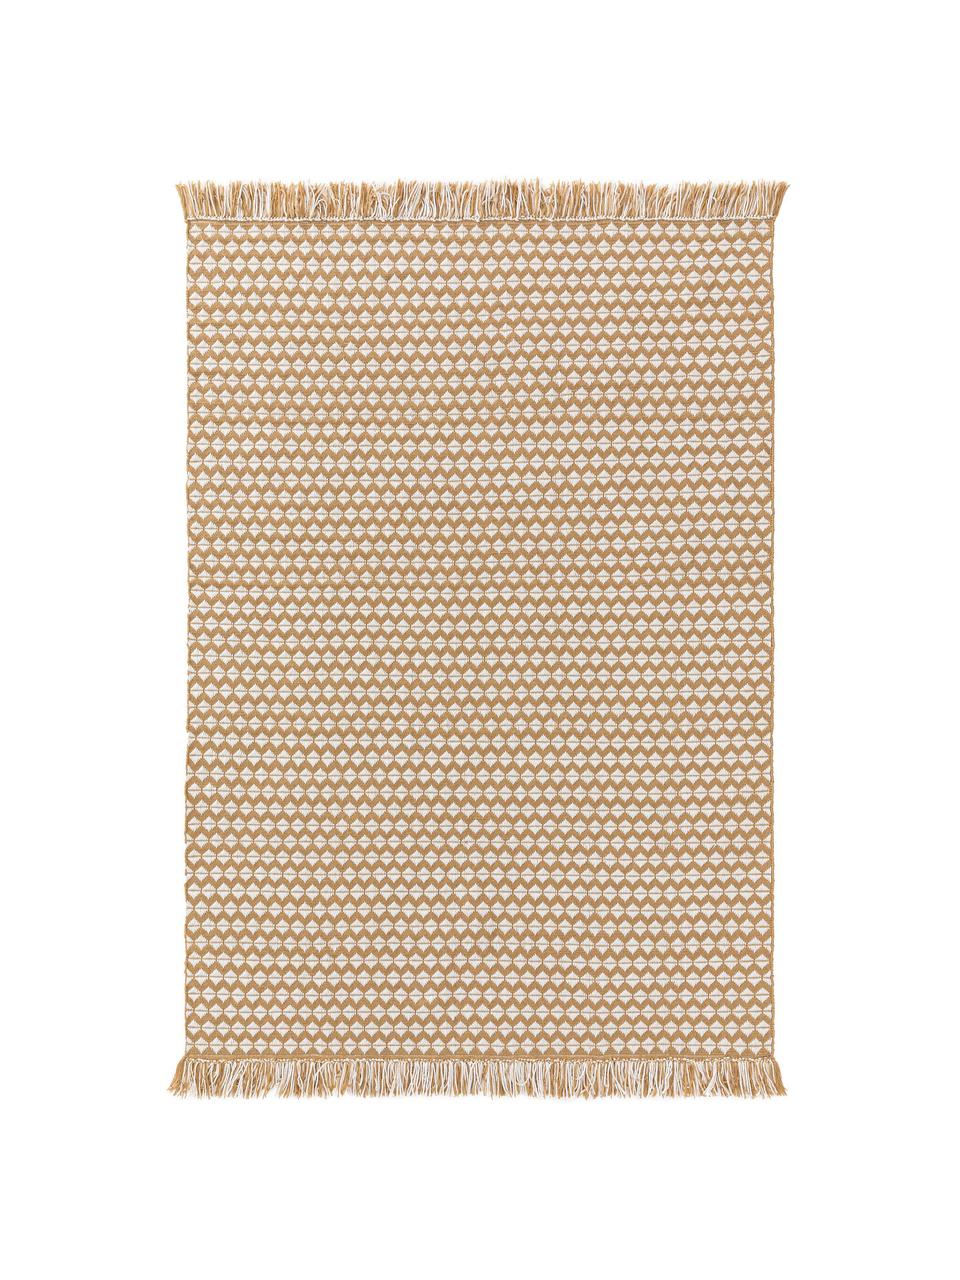 Vnitřní a venkovní koberec s etno vzorem a třásněmi Morty, 100 % polyester (recyklovaný PET), Žlutá, tlumeně bílá, Š 200 cm, D 300 cm (velikost L)